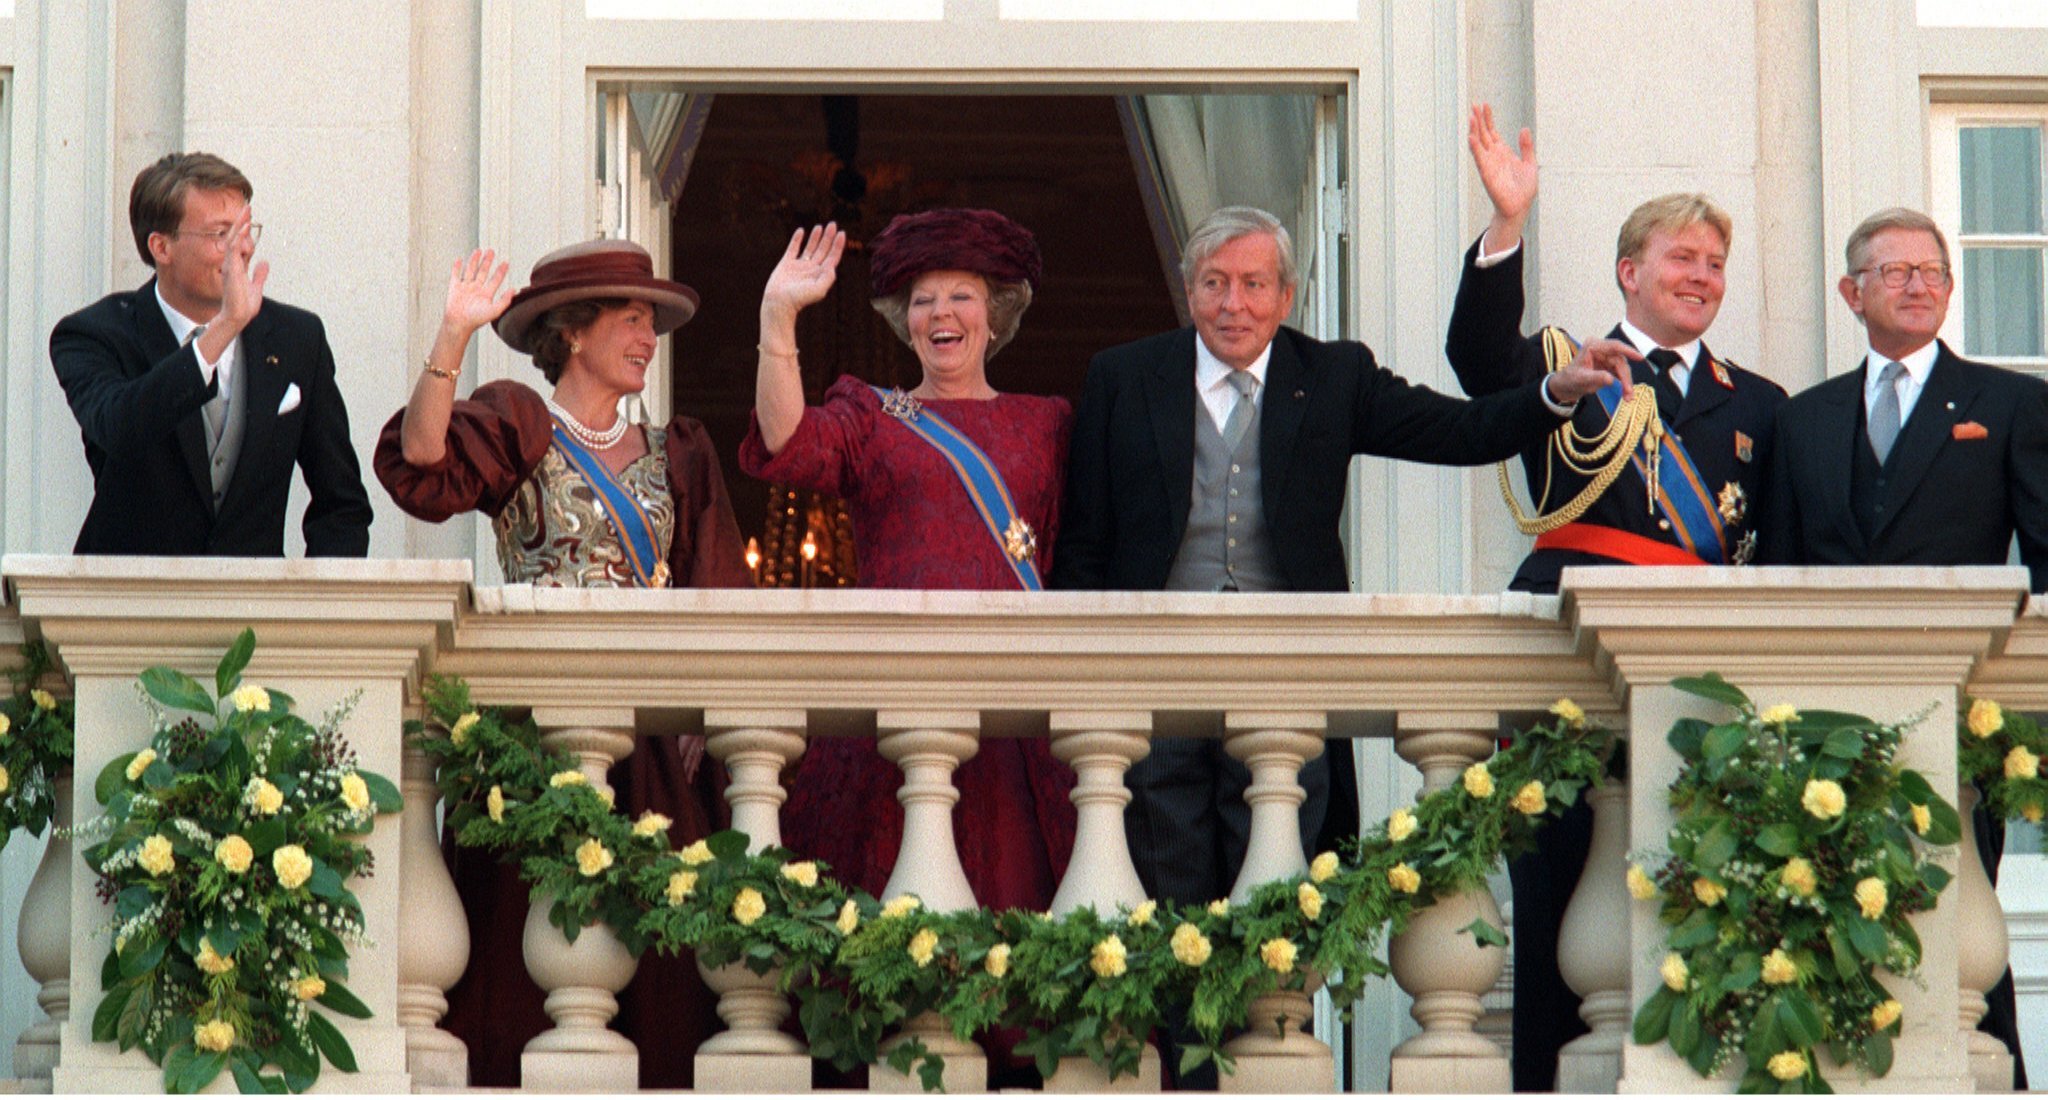 1996-09-17 00:00:00 Leden van de koninklijke familie tijdens de balkonscene op Paleis Noordeinde. V.l.n.r: Prins Constantijn, prinses Margriet, koningin Beatrix, prins Claus, kroonprins Willem-Alexander en Pieter van Vollenhoven.